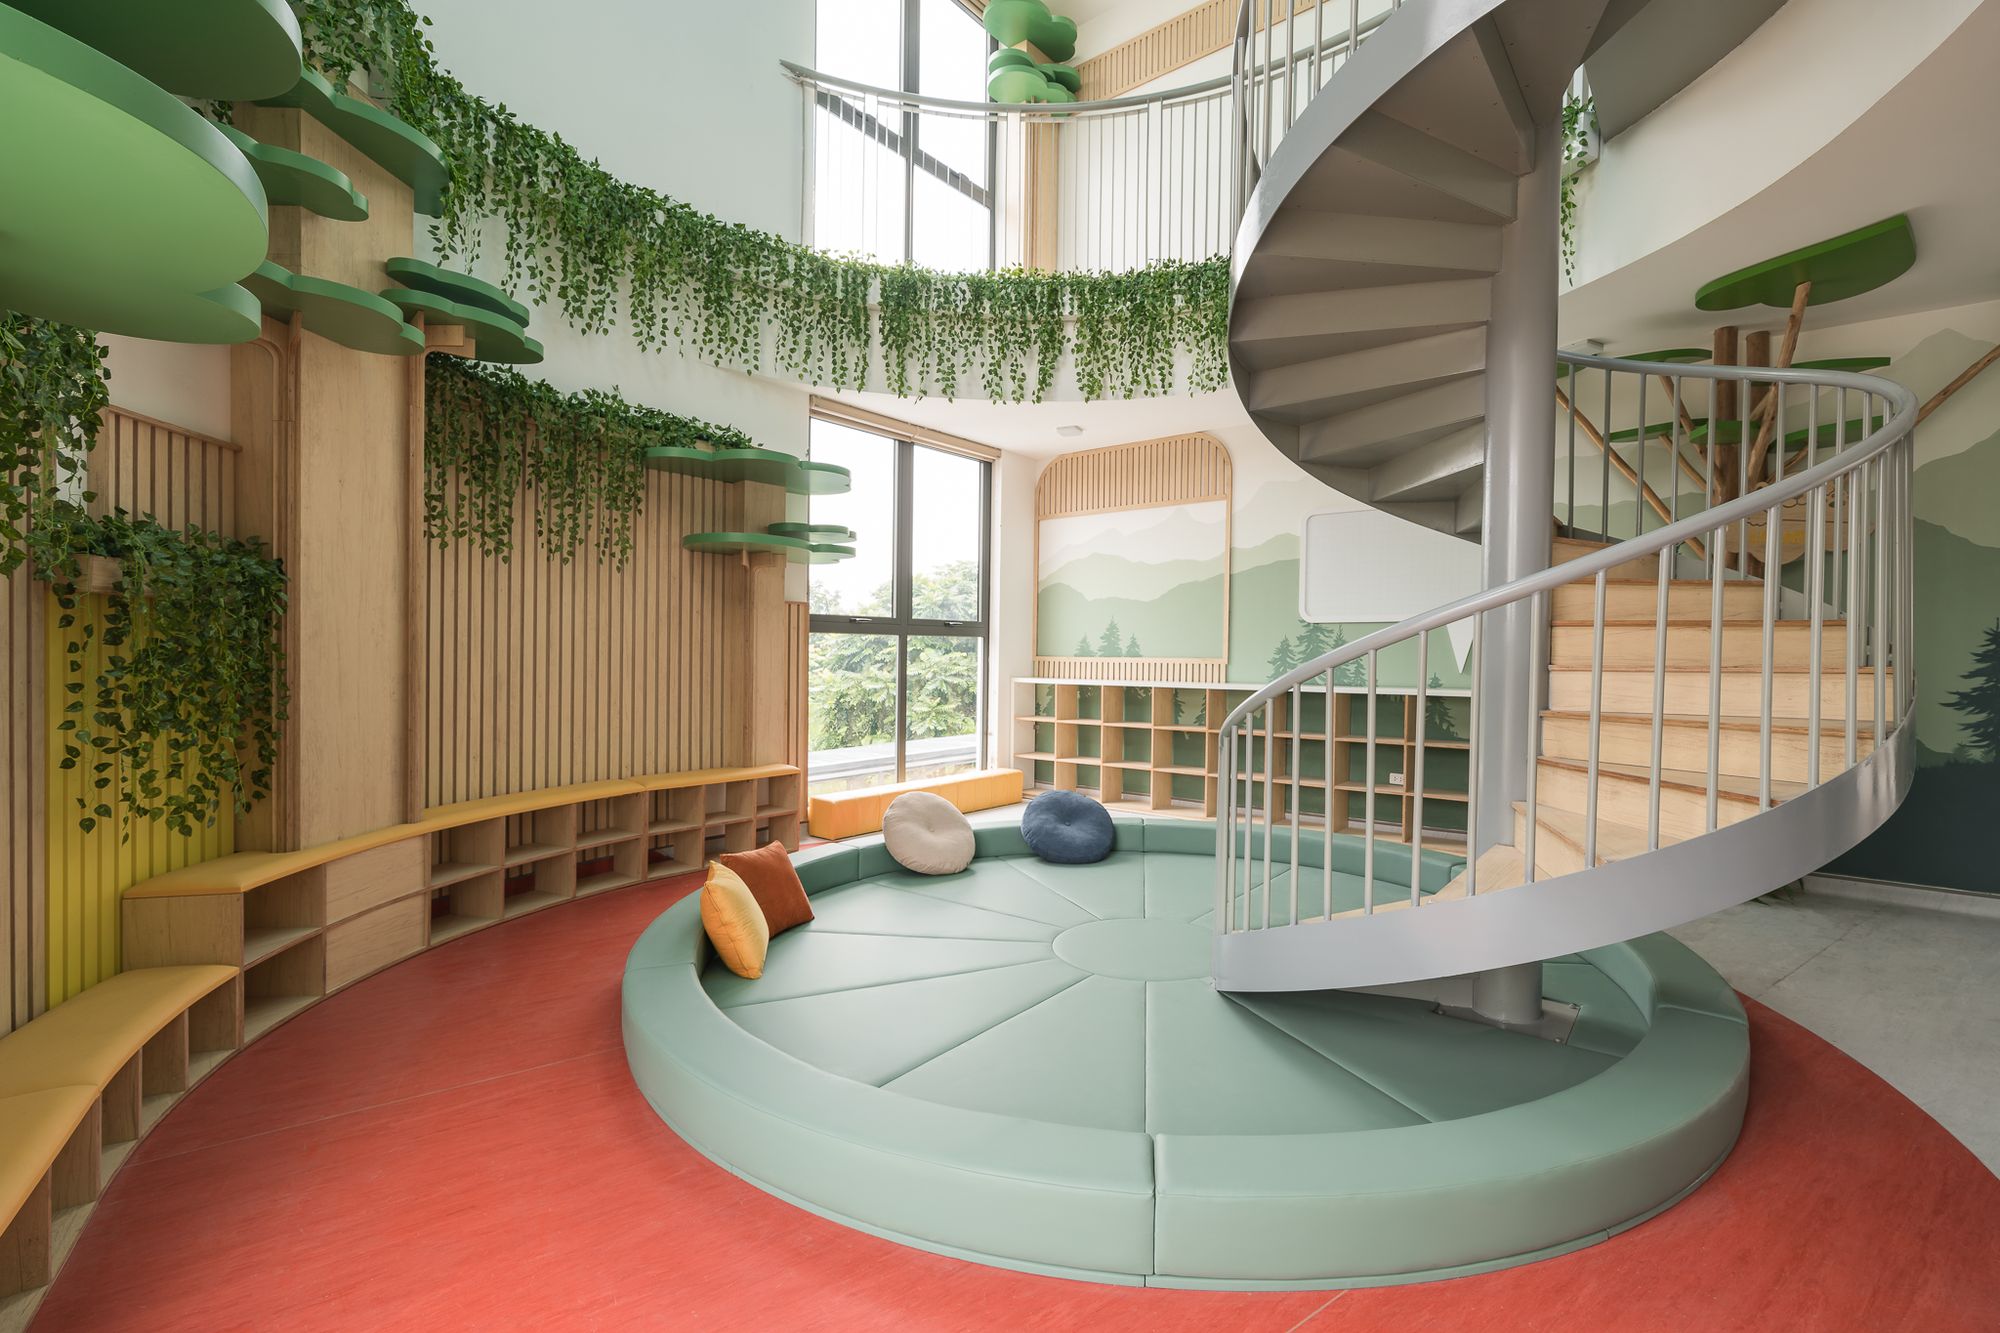 图片[10]|枫熊幼儿园|ART-Arrakis | 建筑室内设计的创新与灵感